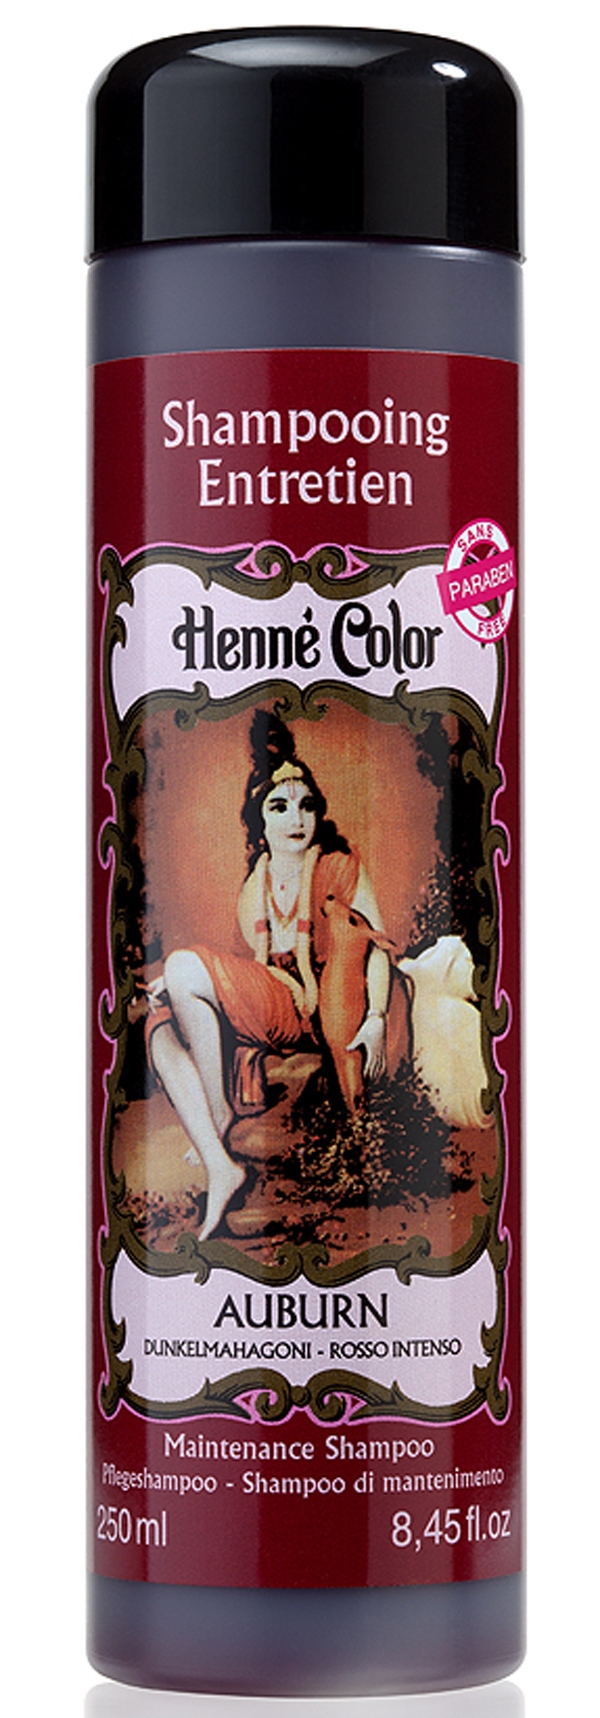 Packung mit 3 pflegenden Shampoos Henna Color kastanienbraun 250ml